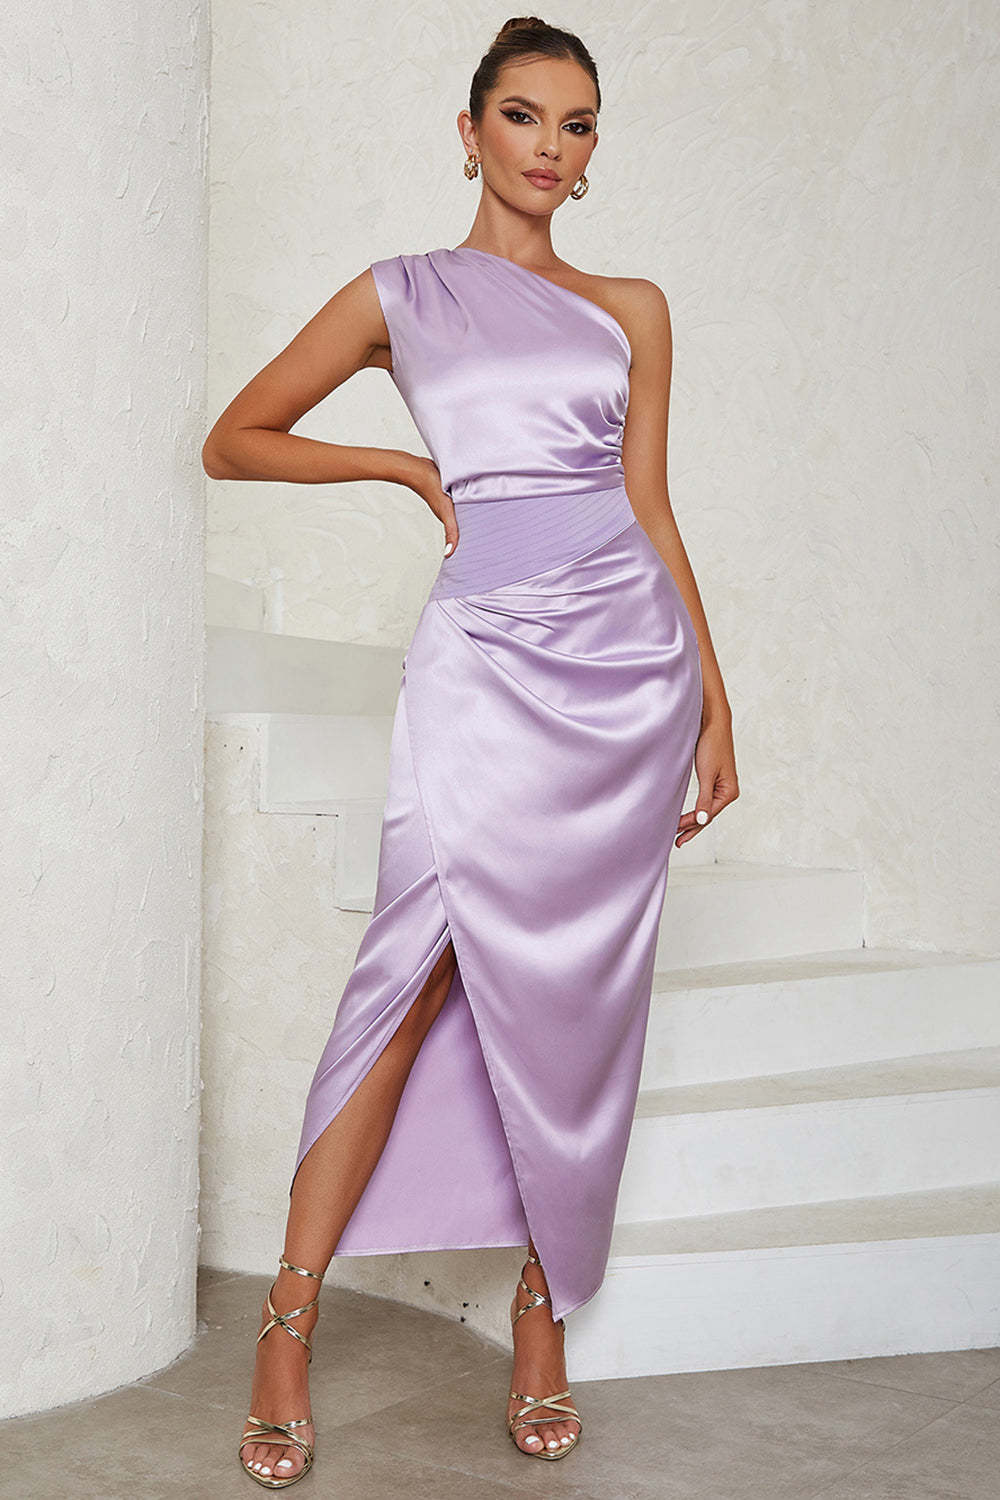 Lavender Sheath One Shoulder Tea Length Formal Dress with Slit